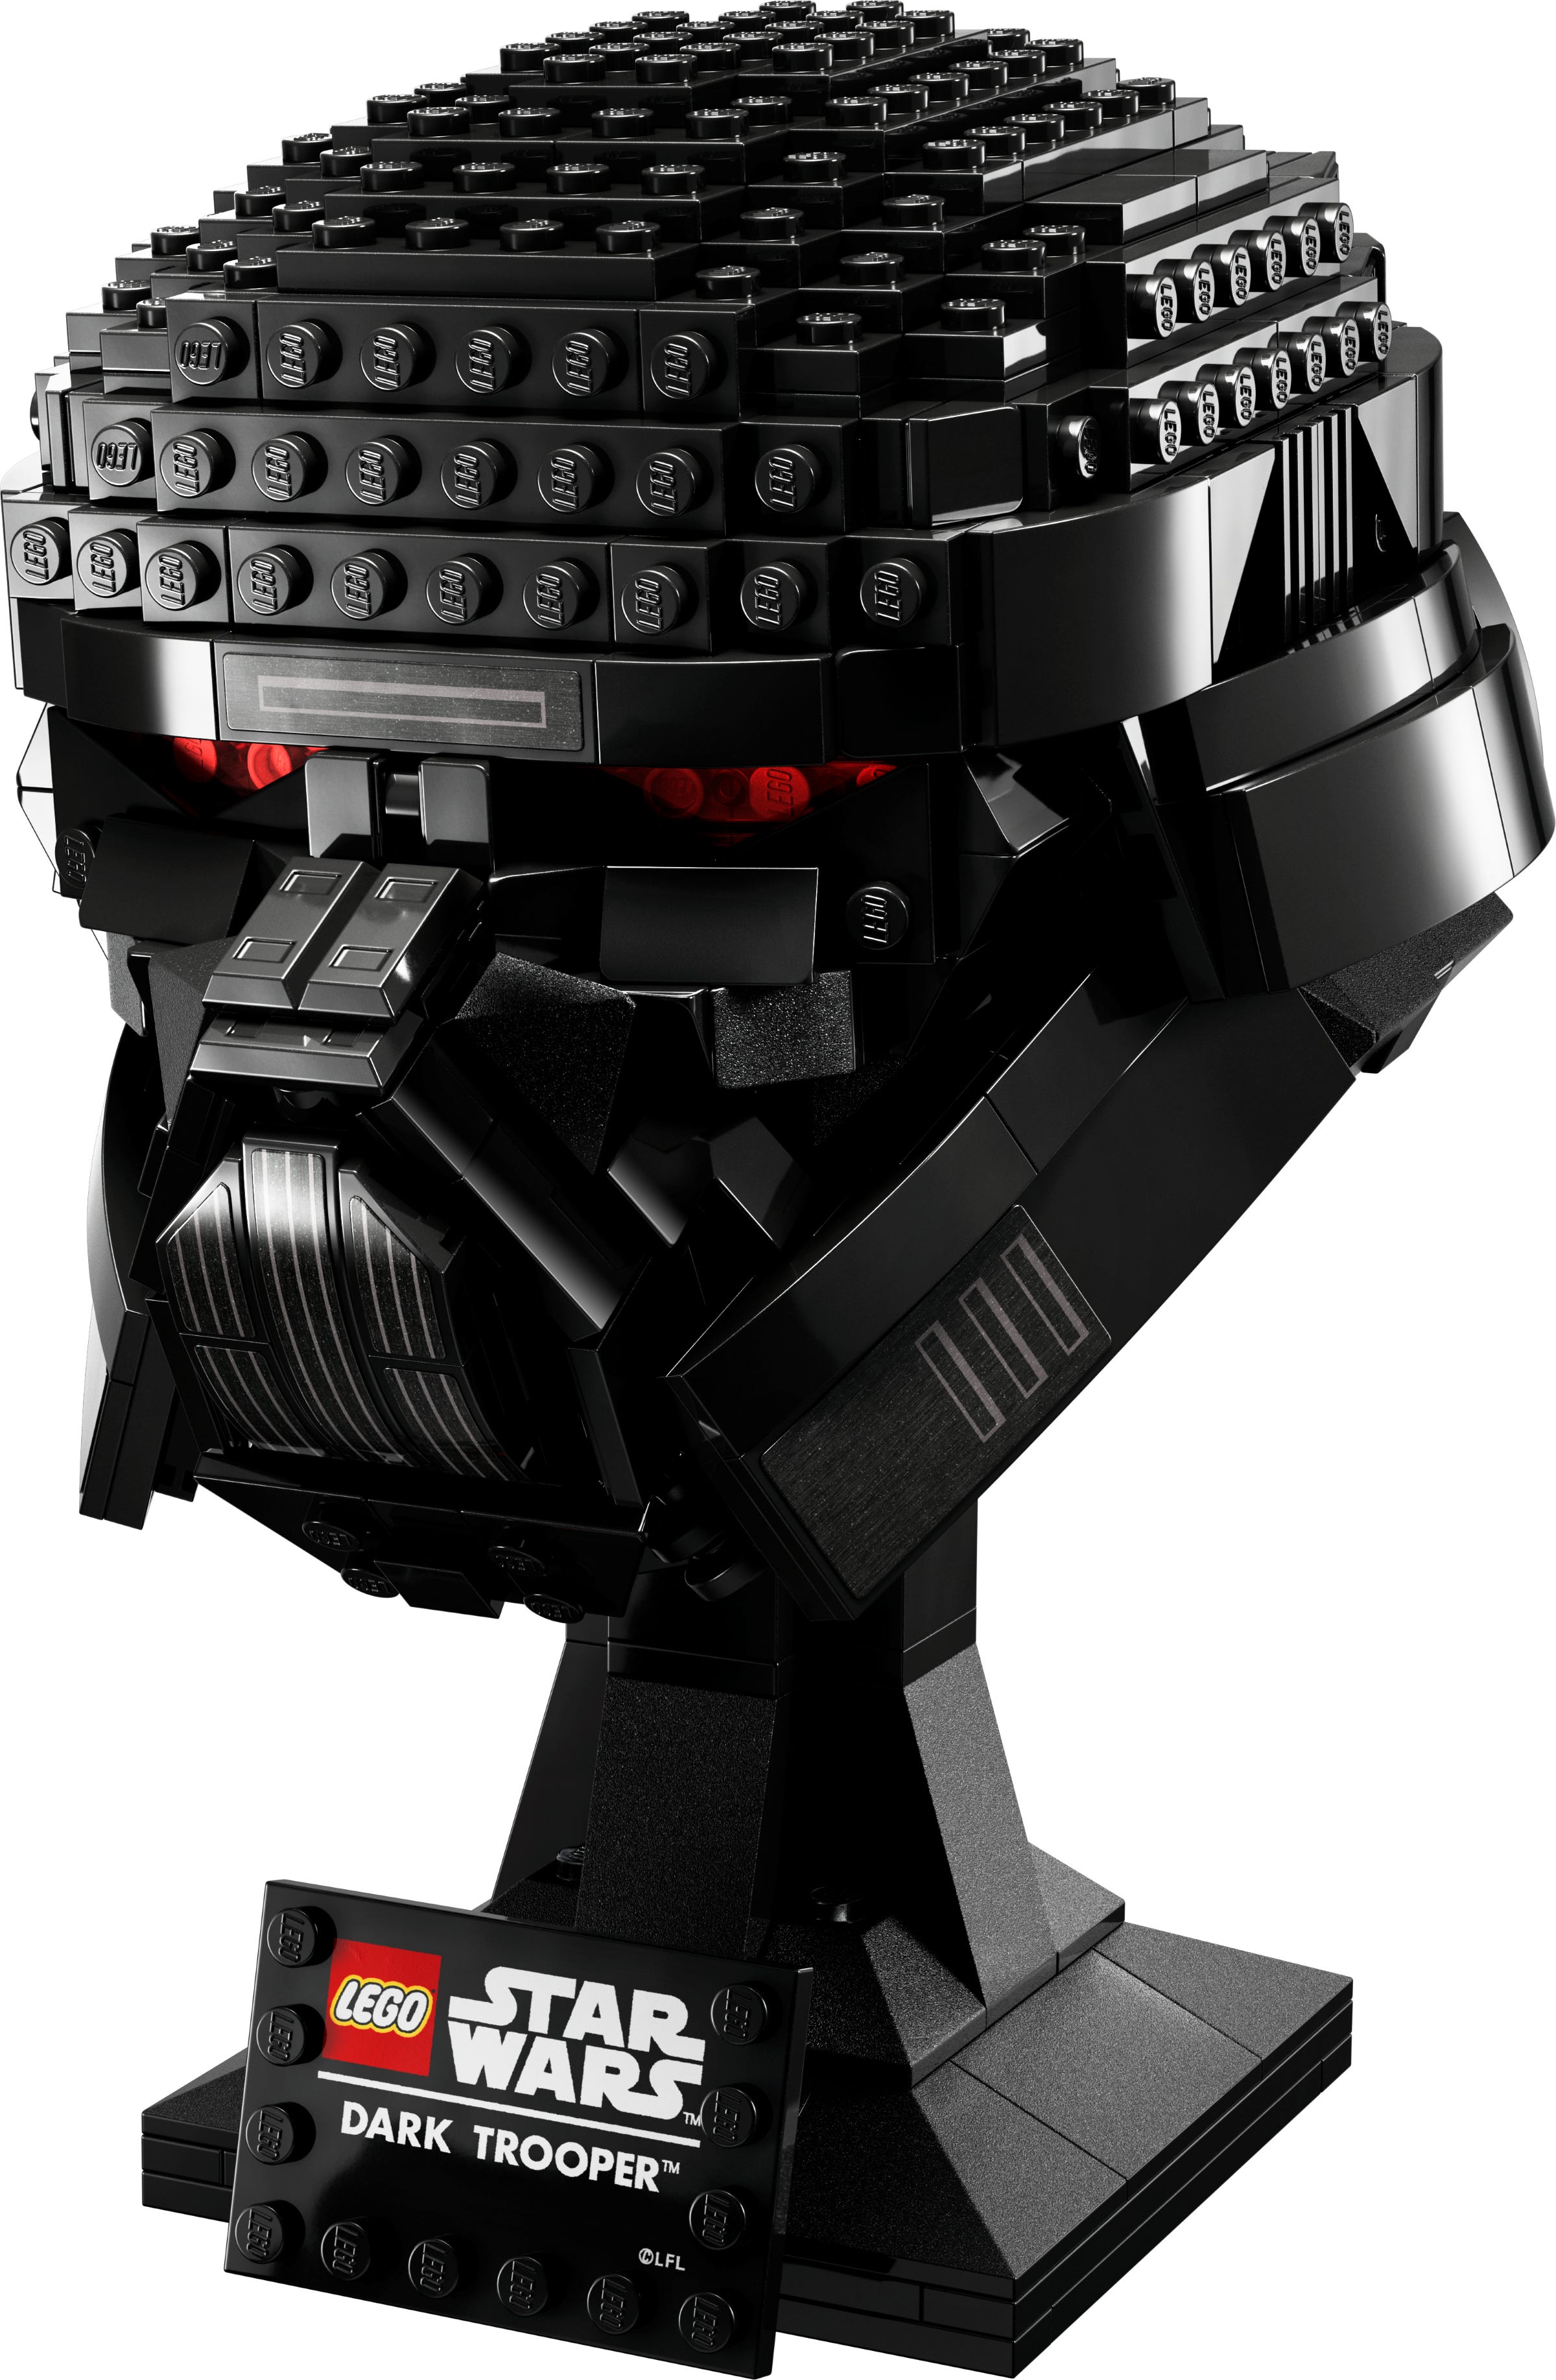 Dark Trooper™ helm